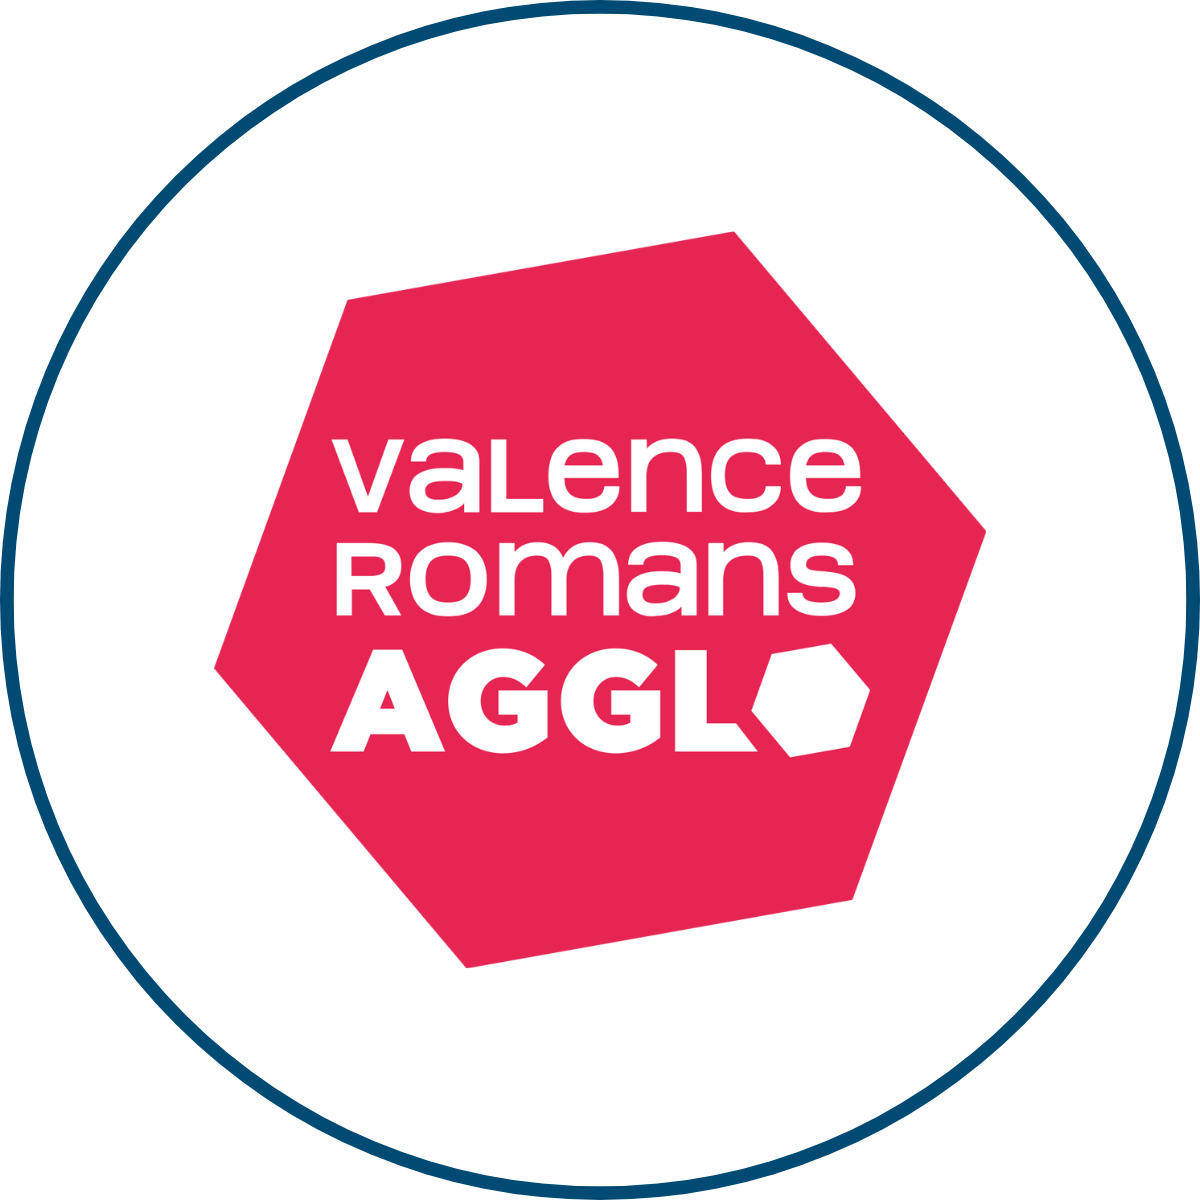 SEM IN Situ | Notre équipe | Valence Romans Agglo | Partenaires | Espaces Économique & Commerciaux | Valence Romans Agglo | Drôme